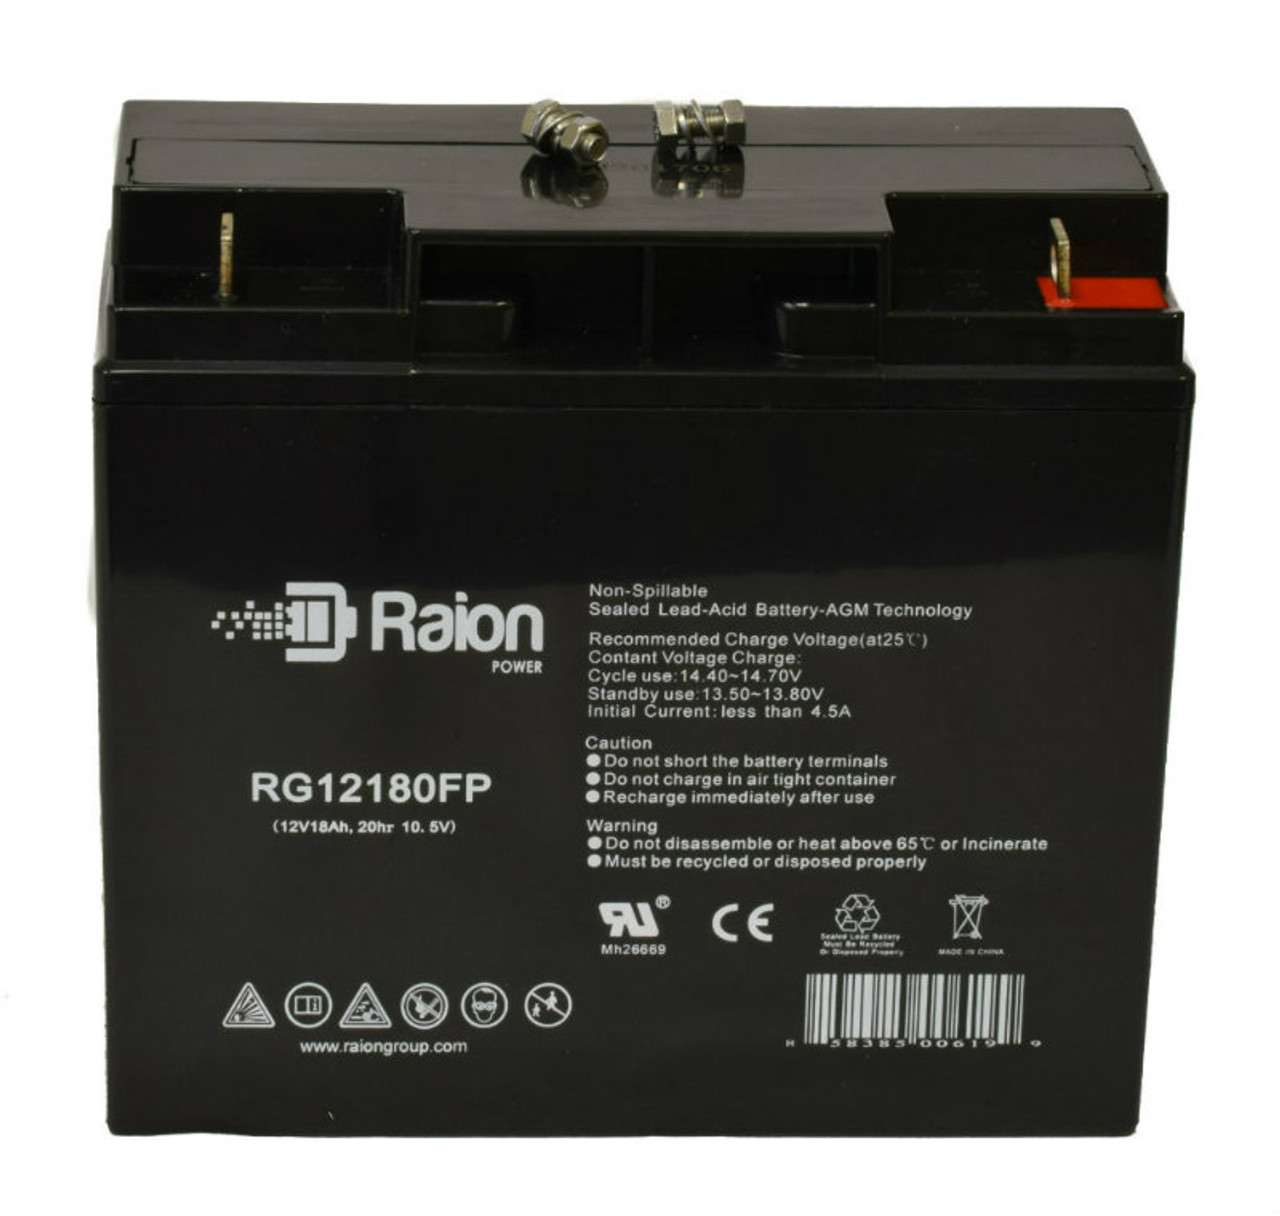 Raion Power RG12180FP 12V 18Ah Lead Acid Battery for GE Medical Systems AMX III